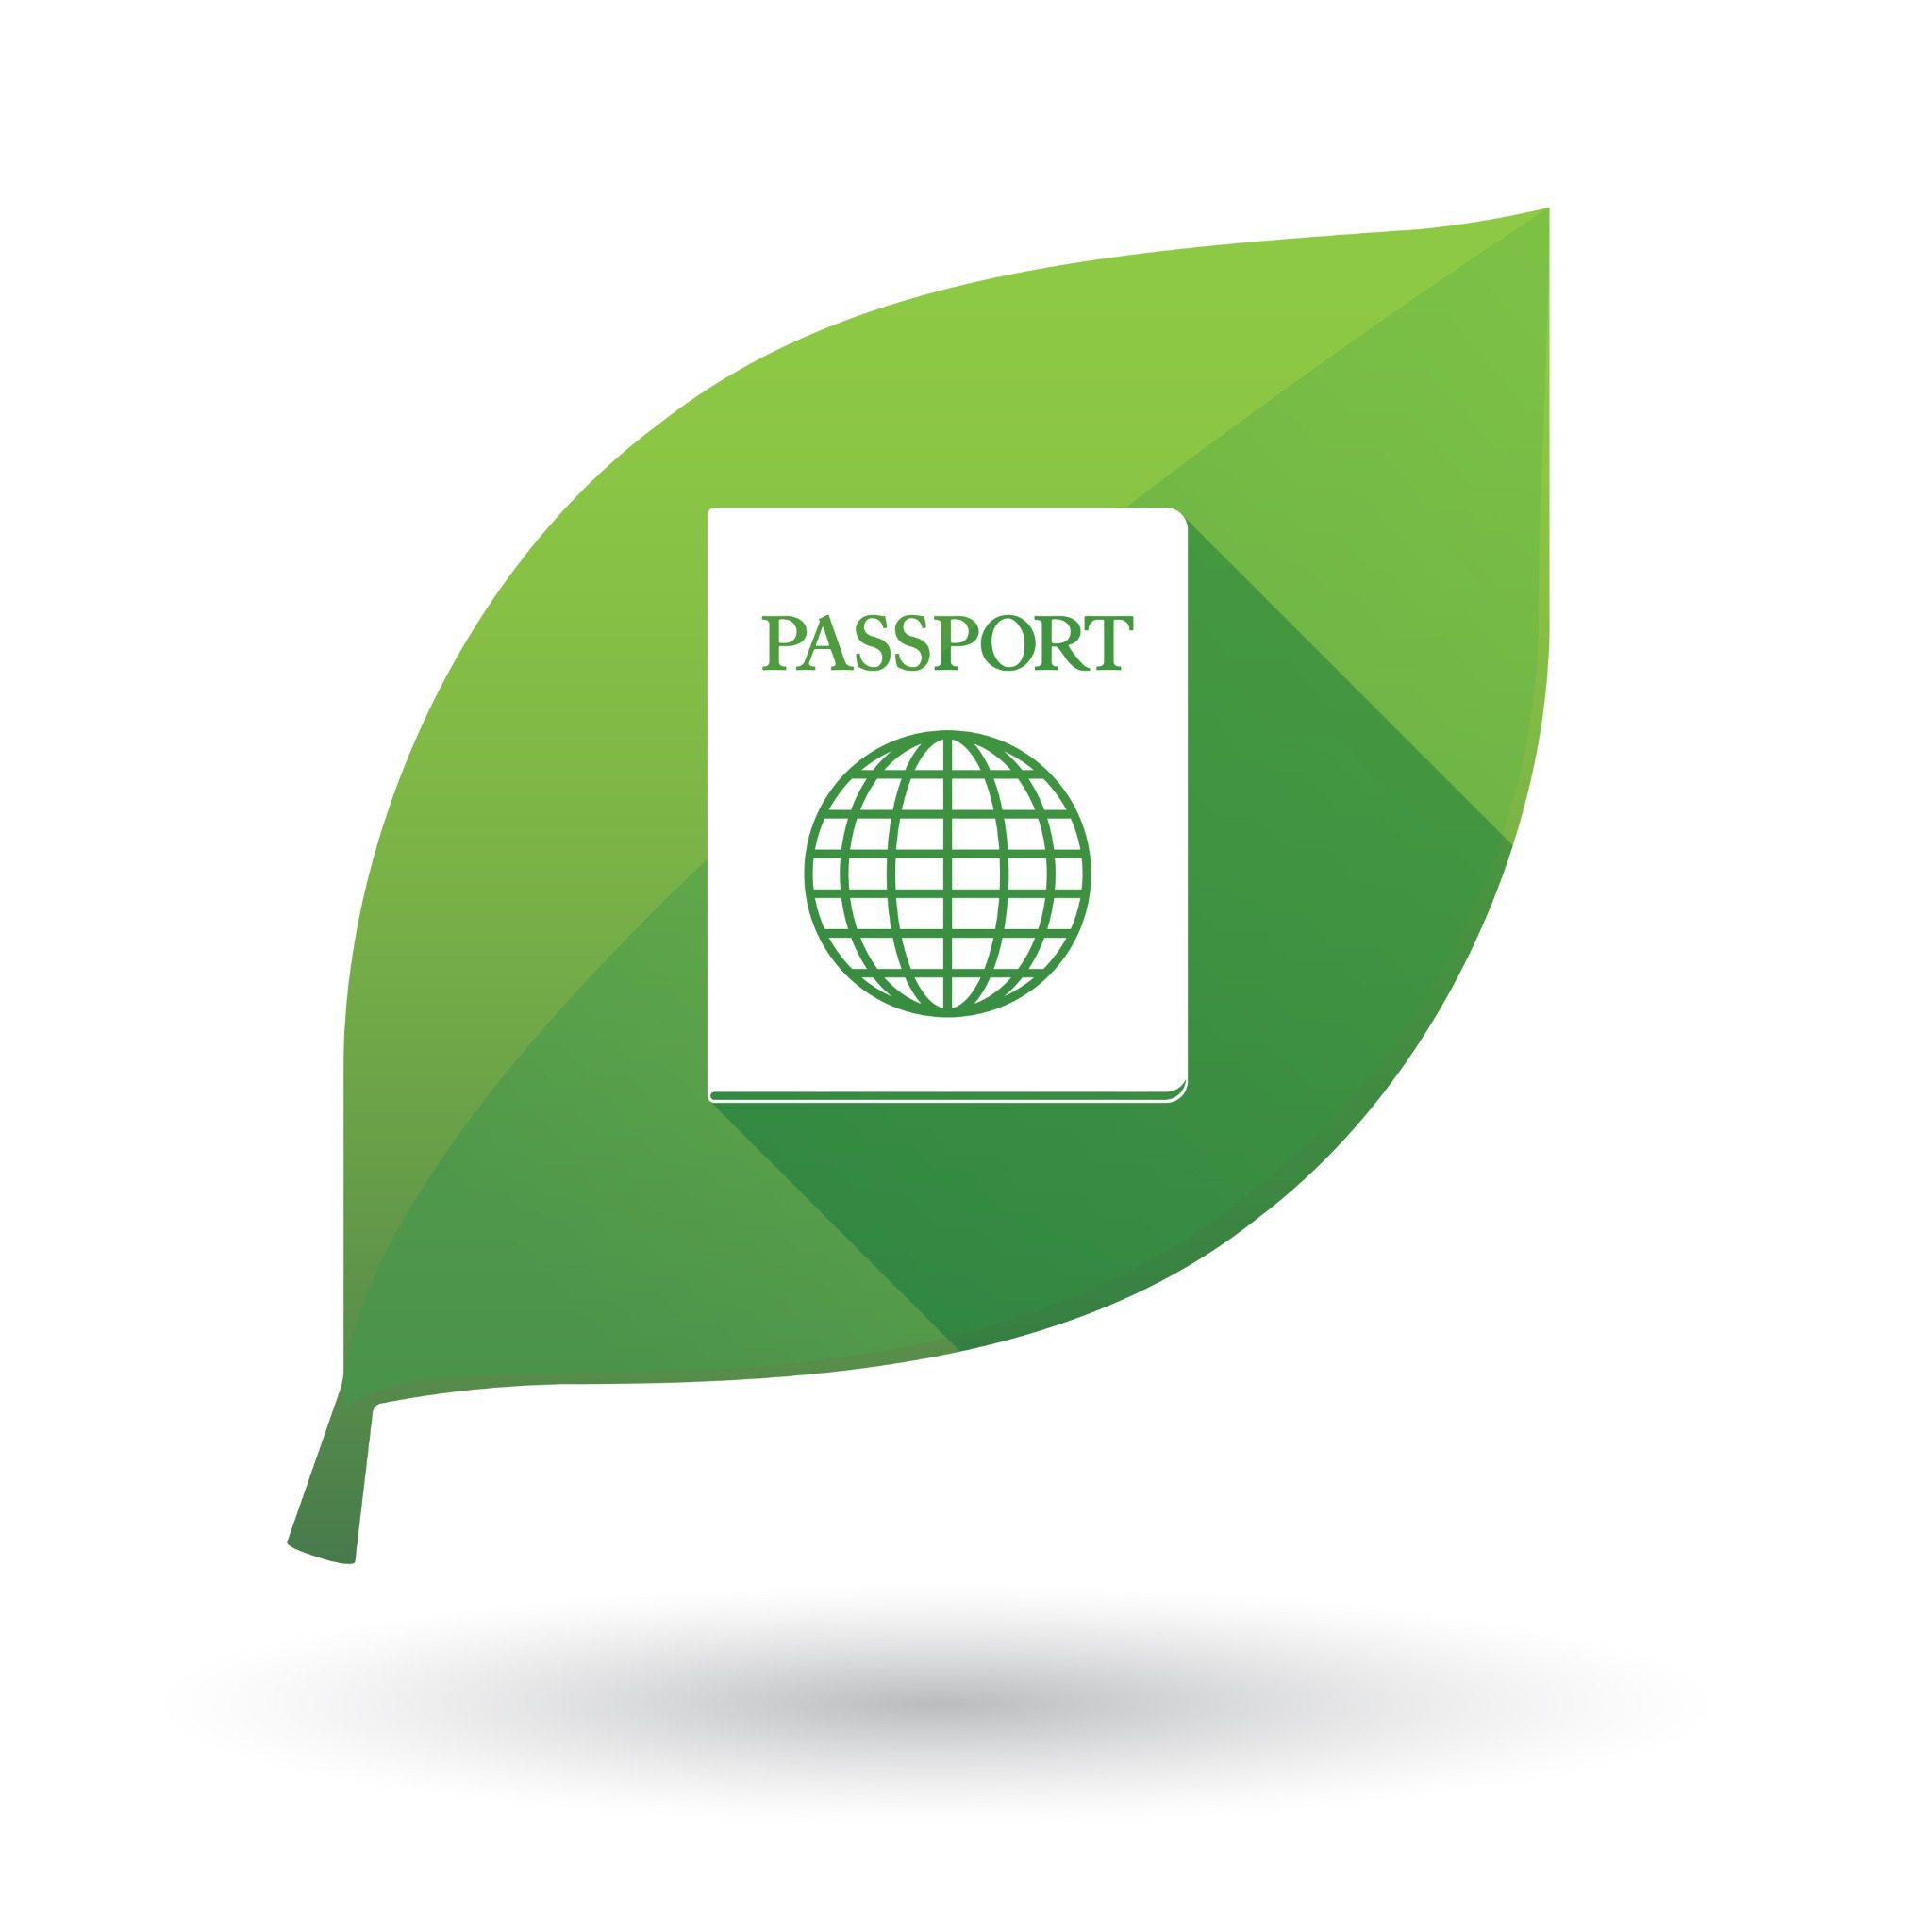 Zielony liść z napisem Paszport